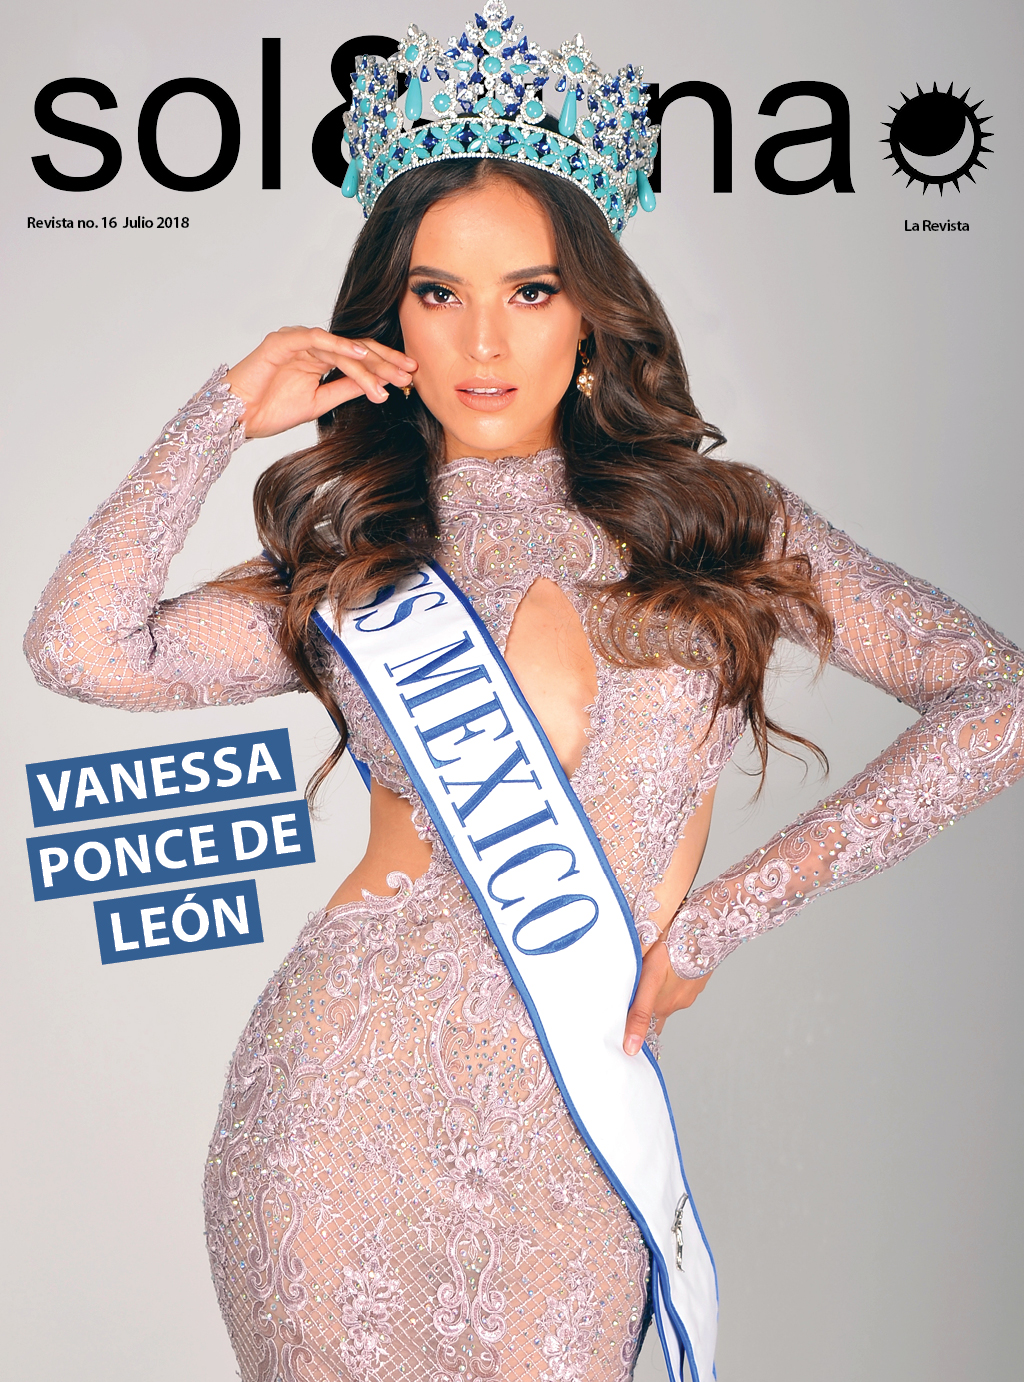 Мисс Мира 2018  Ванесса Понсе де Леон из Мексики